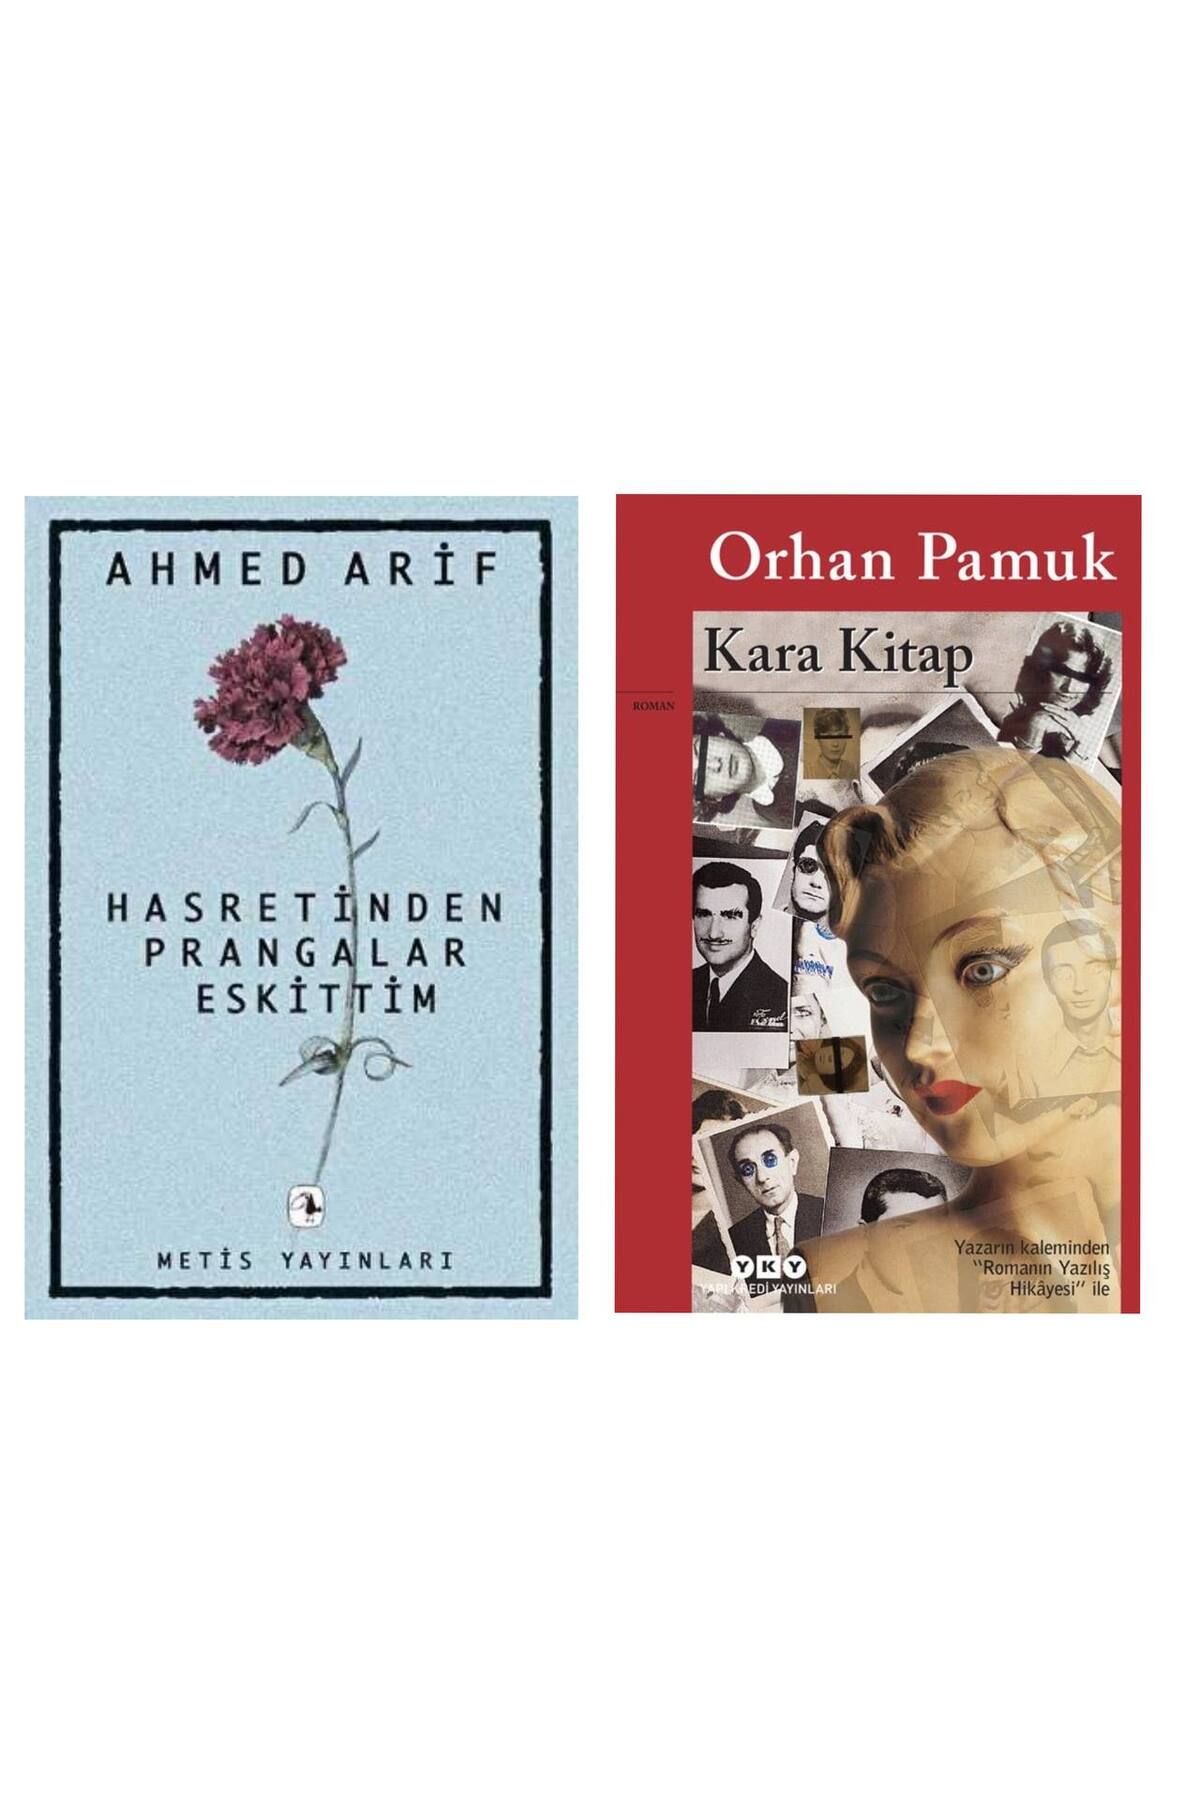 Metis Yayıncılık Hasretin Prangalar Eskittim - Ahmed Arif - Kara Kitap - Orhan Pamuk